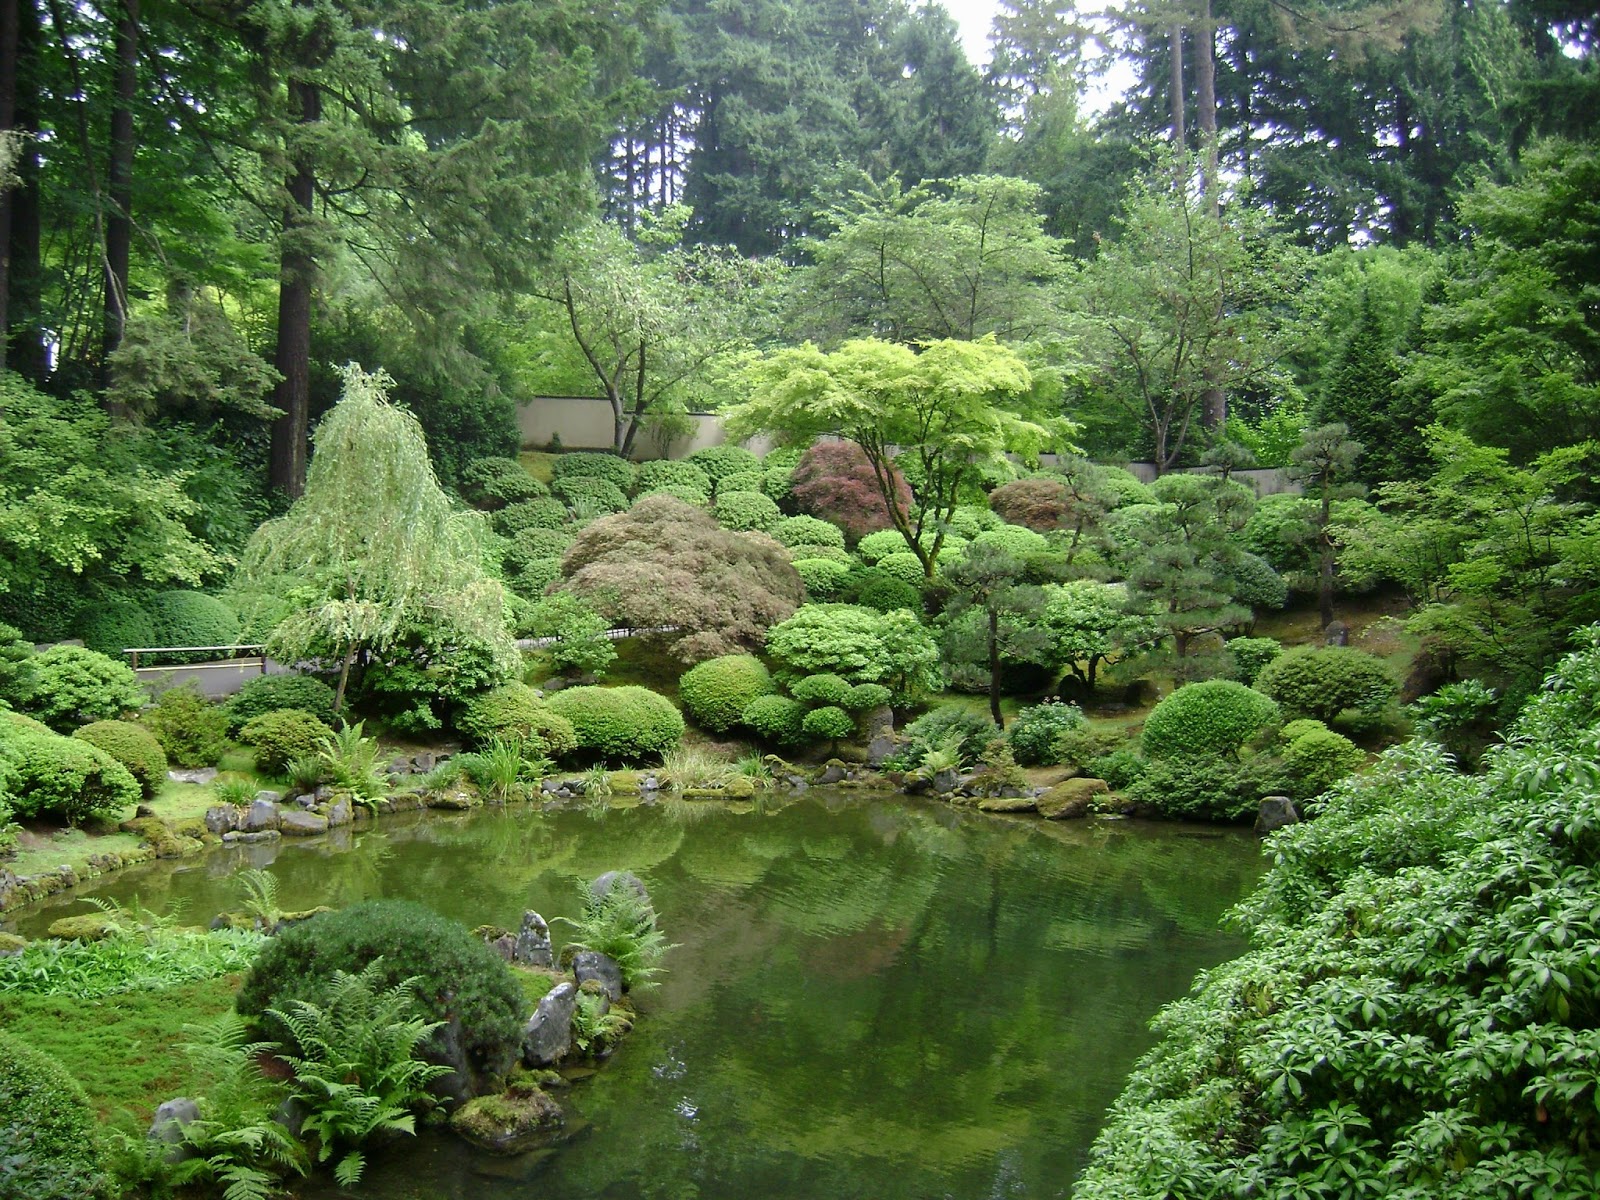 Prairie Rose's Garden: Welcome to My Japanese Garden!